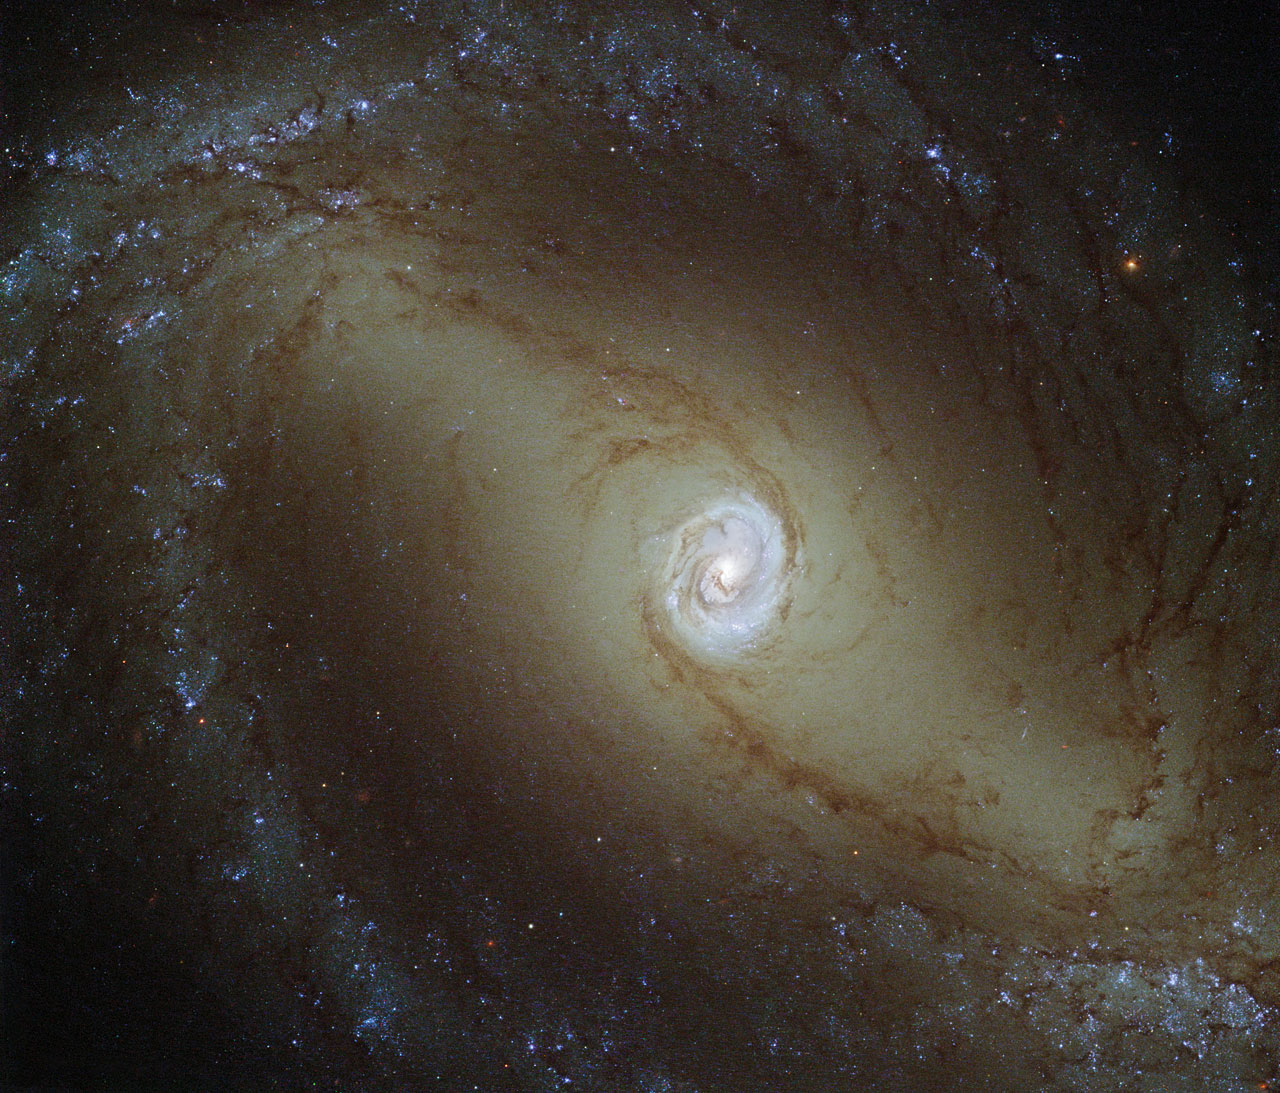 哈勃图像呈现的是邻近的旋涡星系NGC 1433，它离我们约3200万光年 ... ... ... ... ...